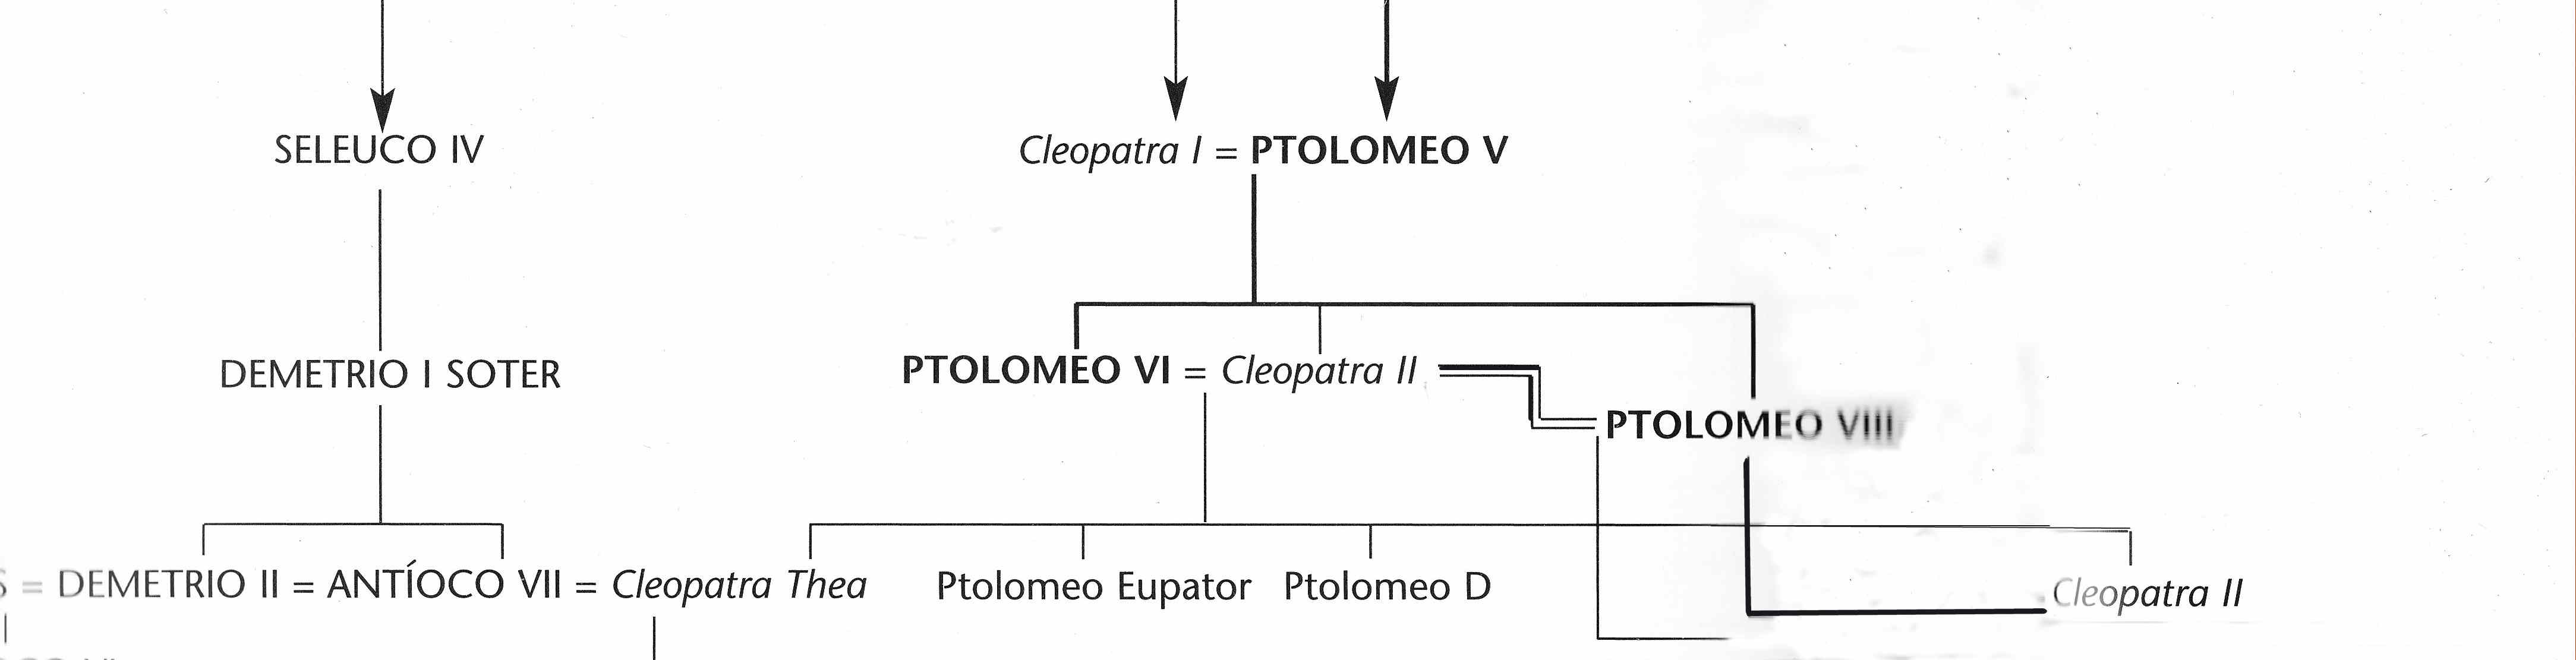 Egipto Antiguo 39 y Ptolomeo VI Filometor 1